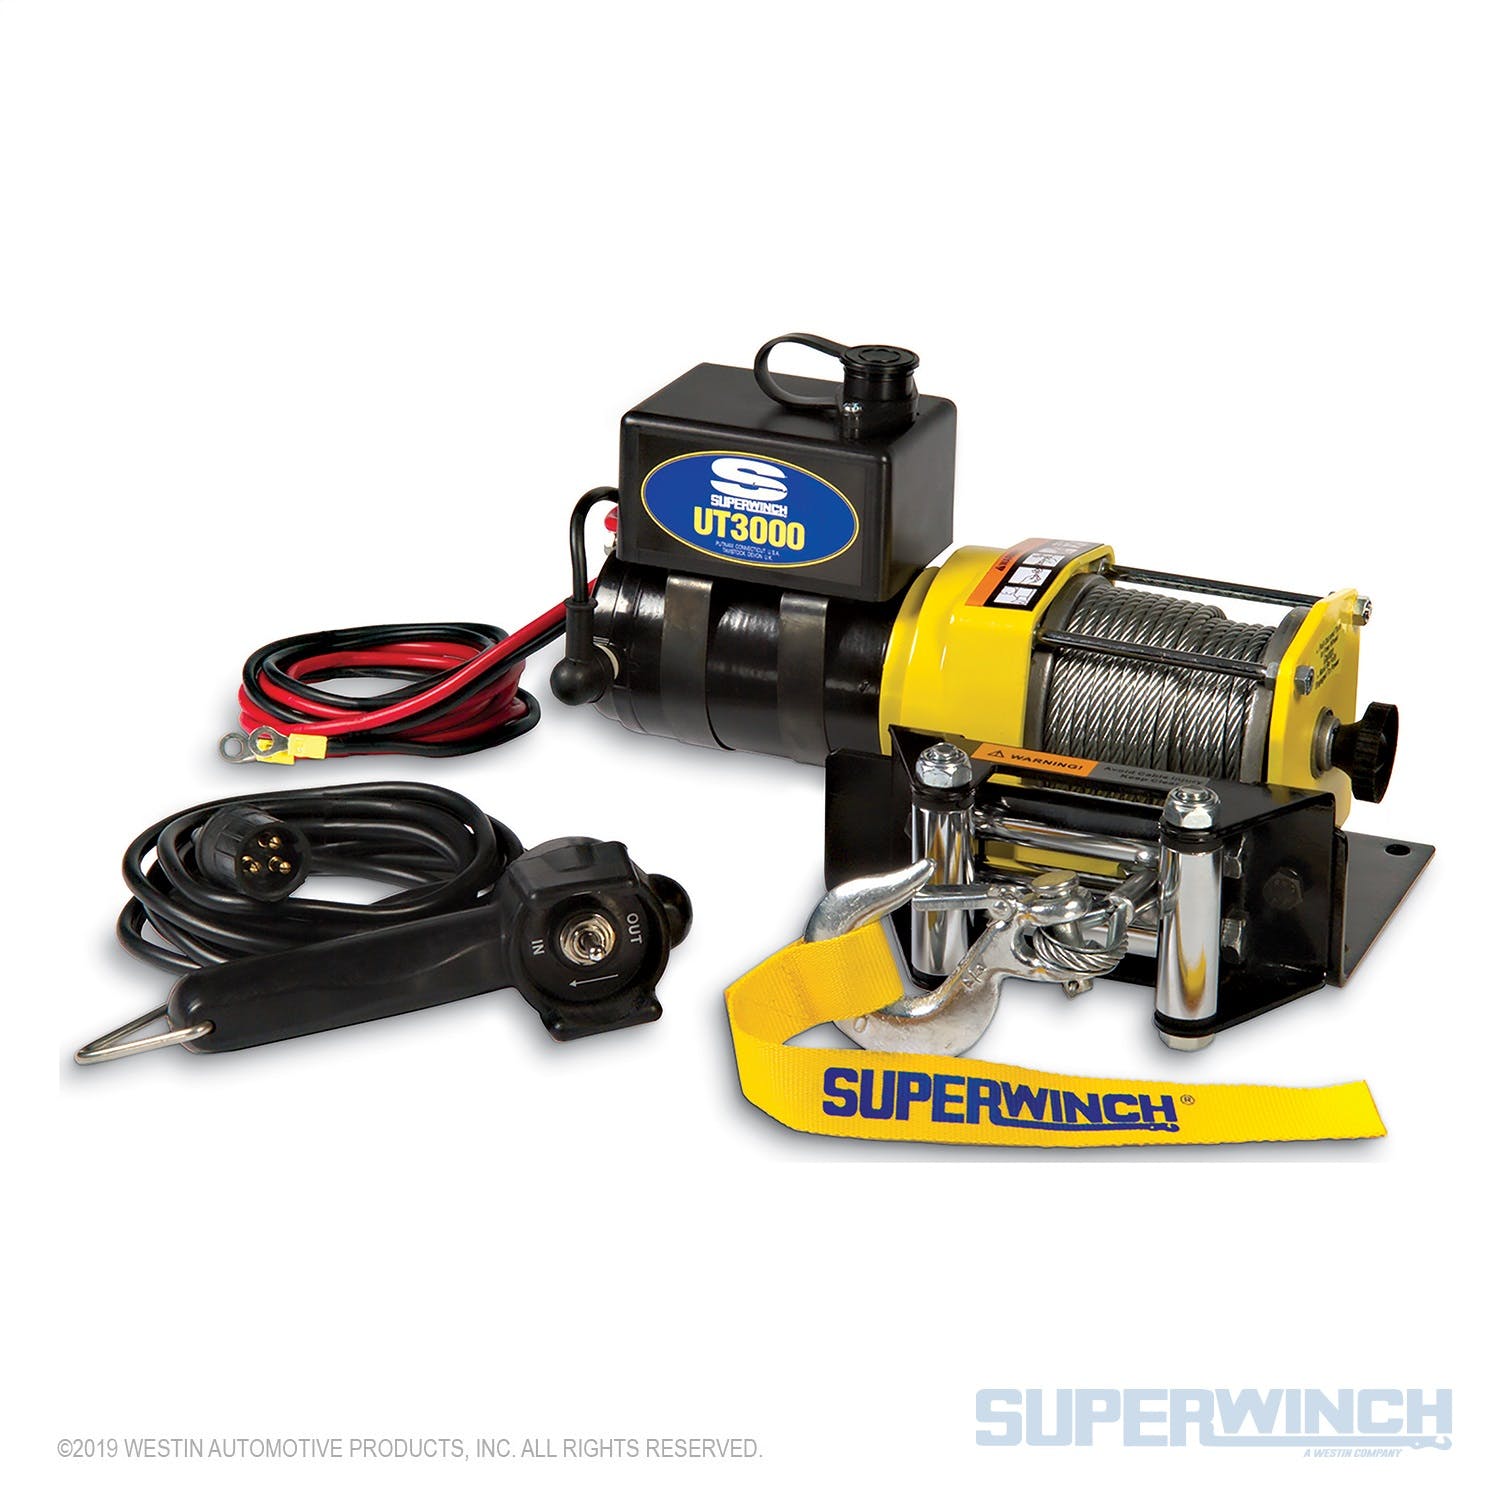 Superwinch 1331200 UT3000 Winch